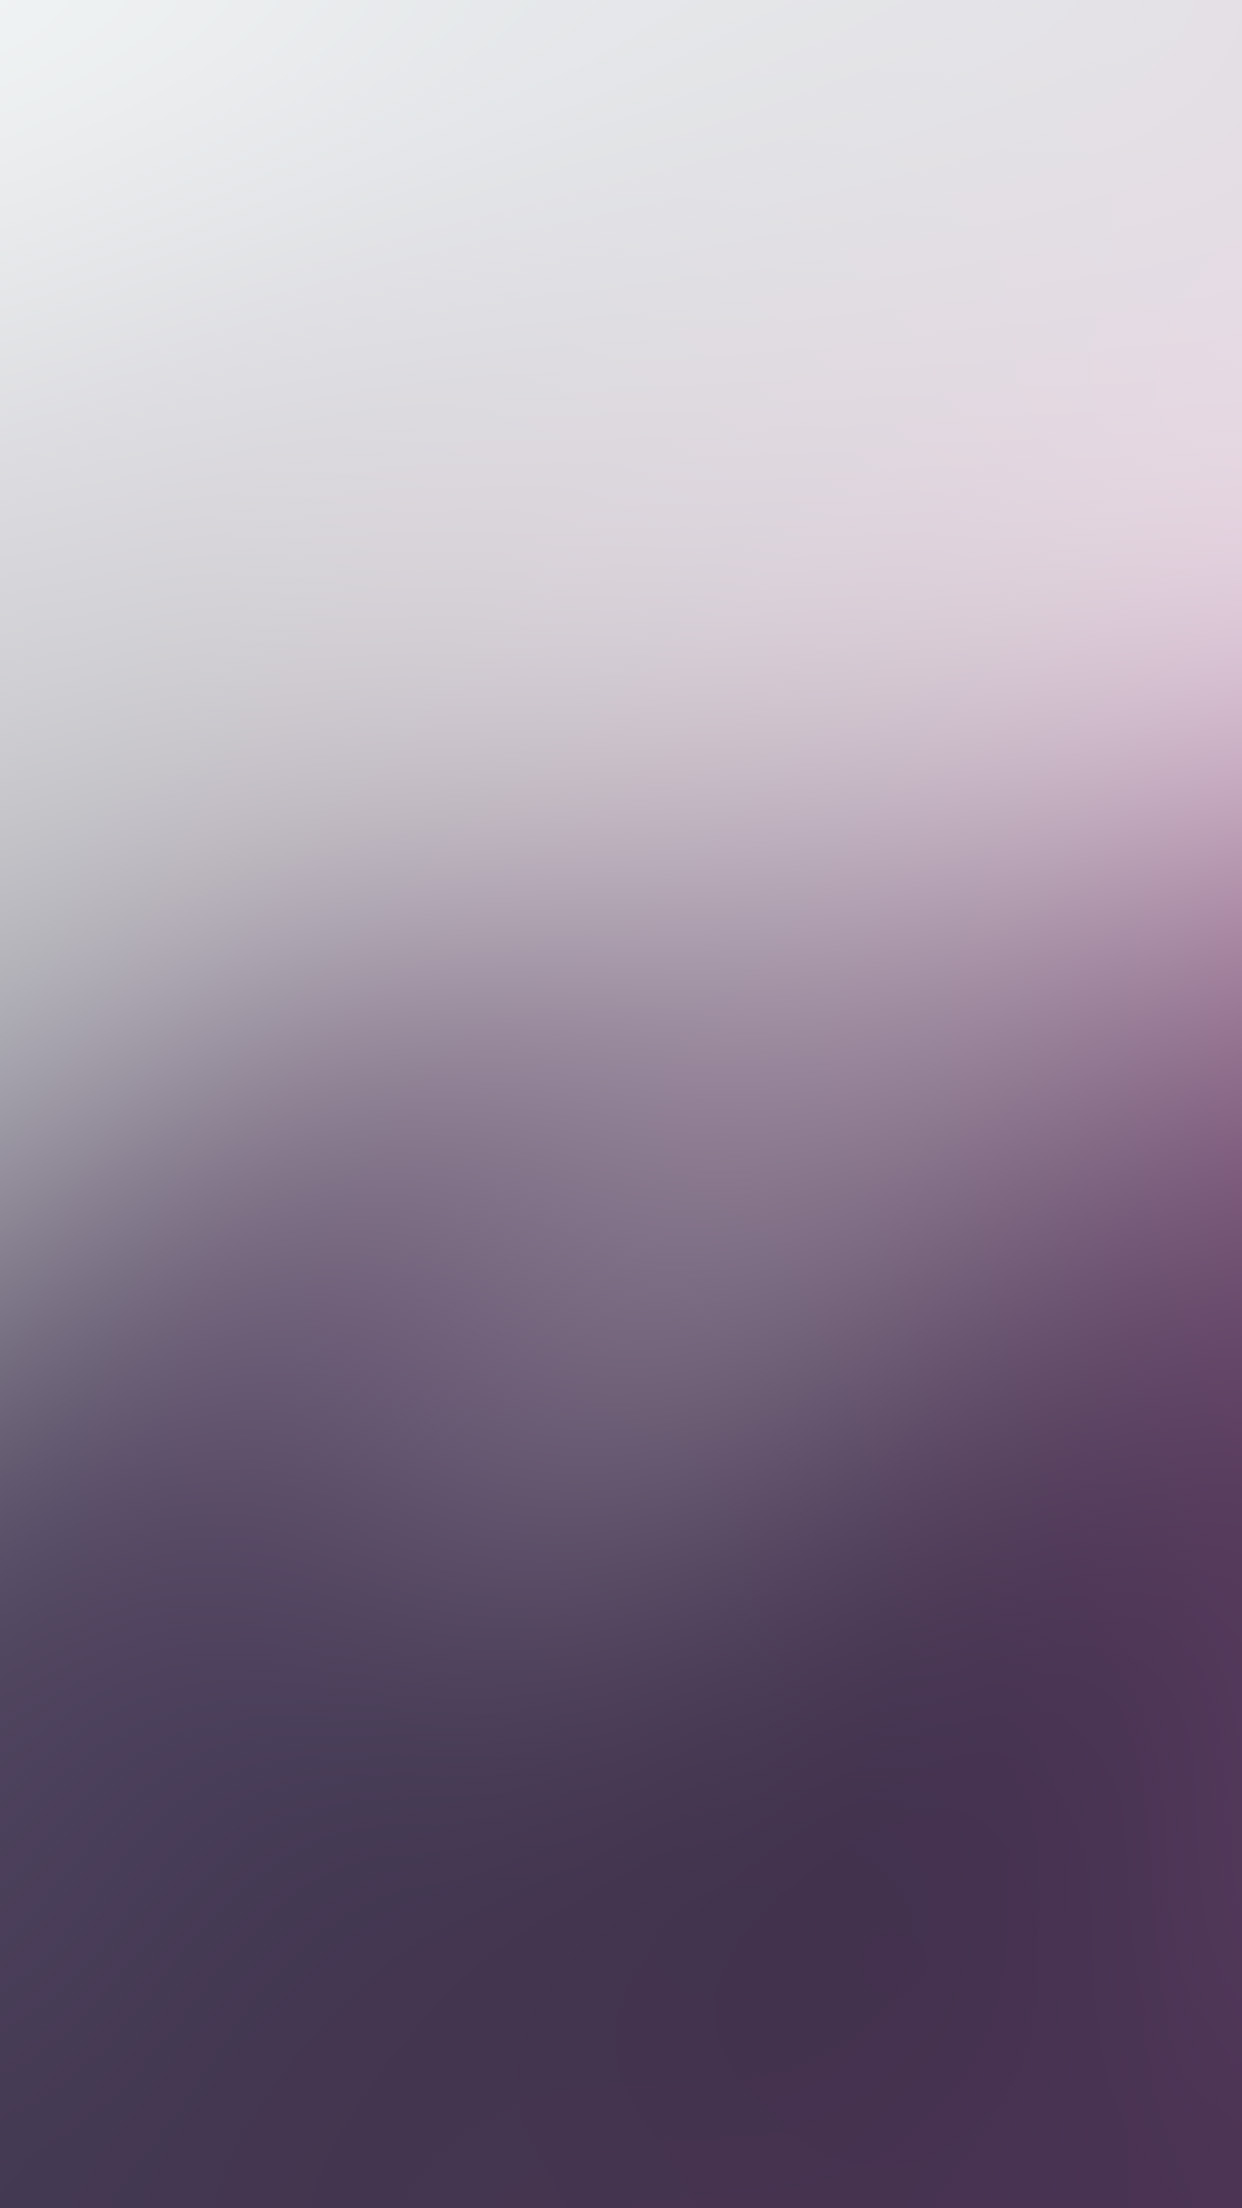 1242x2208 | iPhone11 wallpaper | sm81-purple-blue-blur-gradati